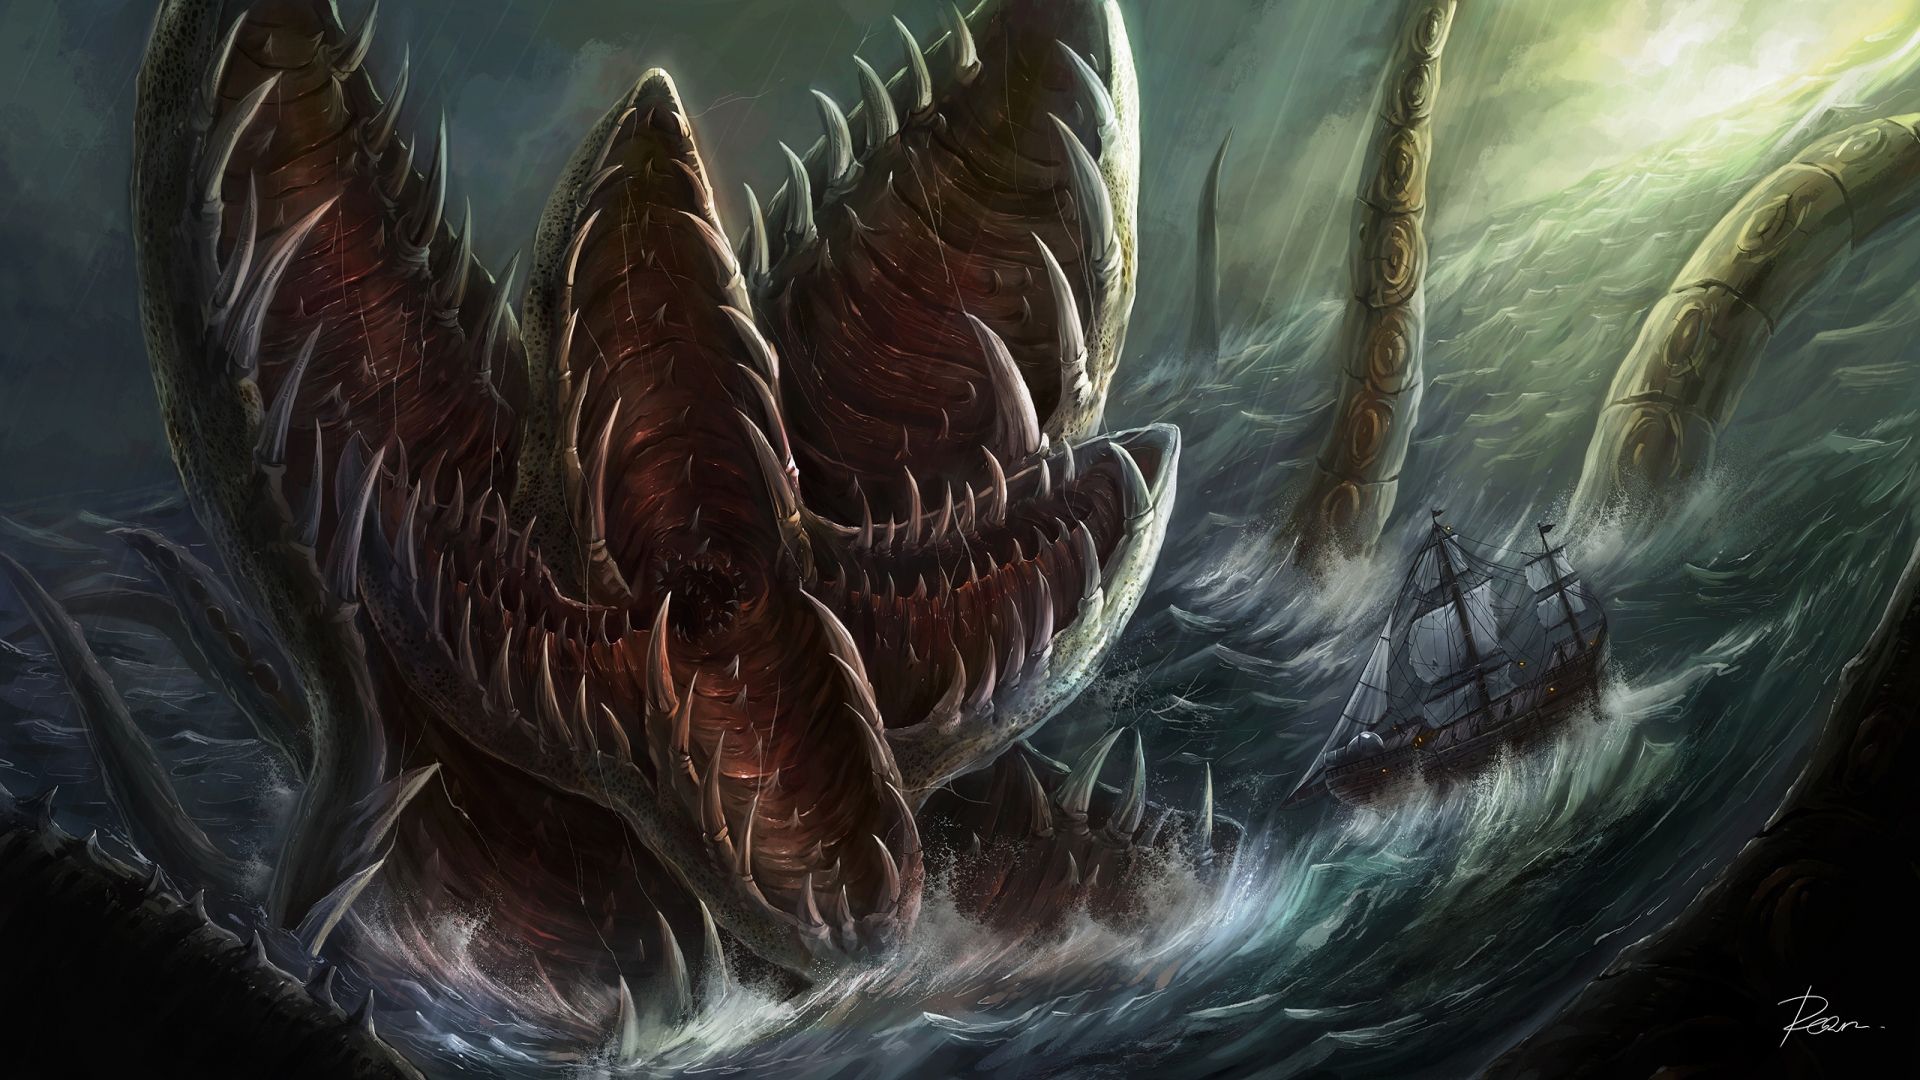 Free download dark paintings art sea ocean nature evil horror